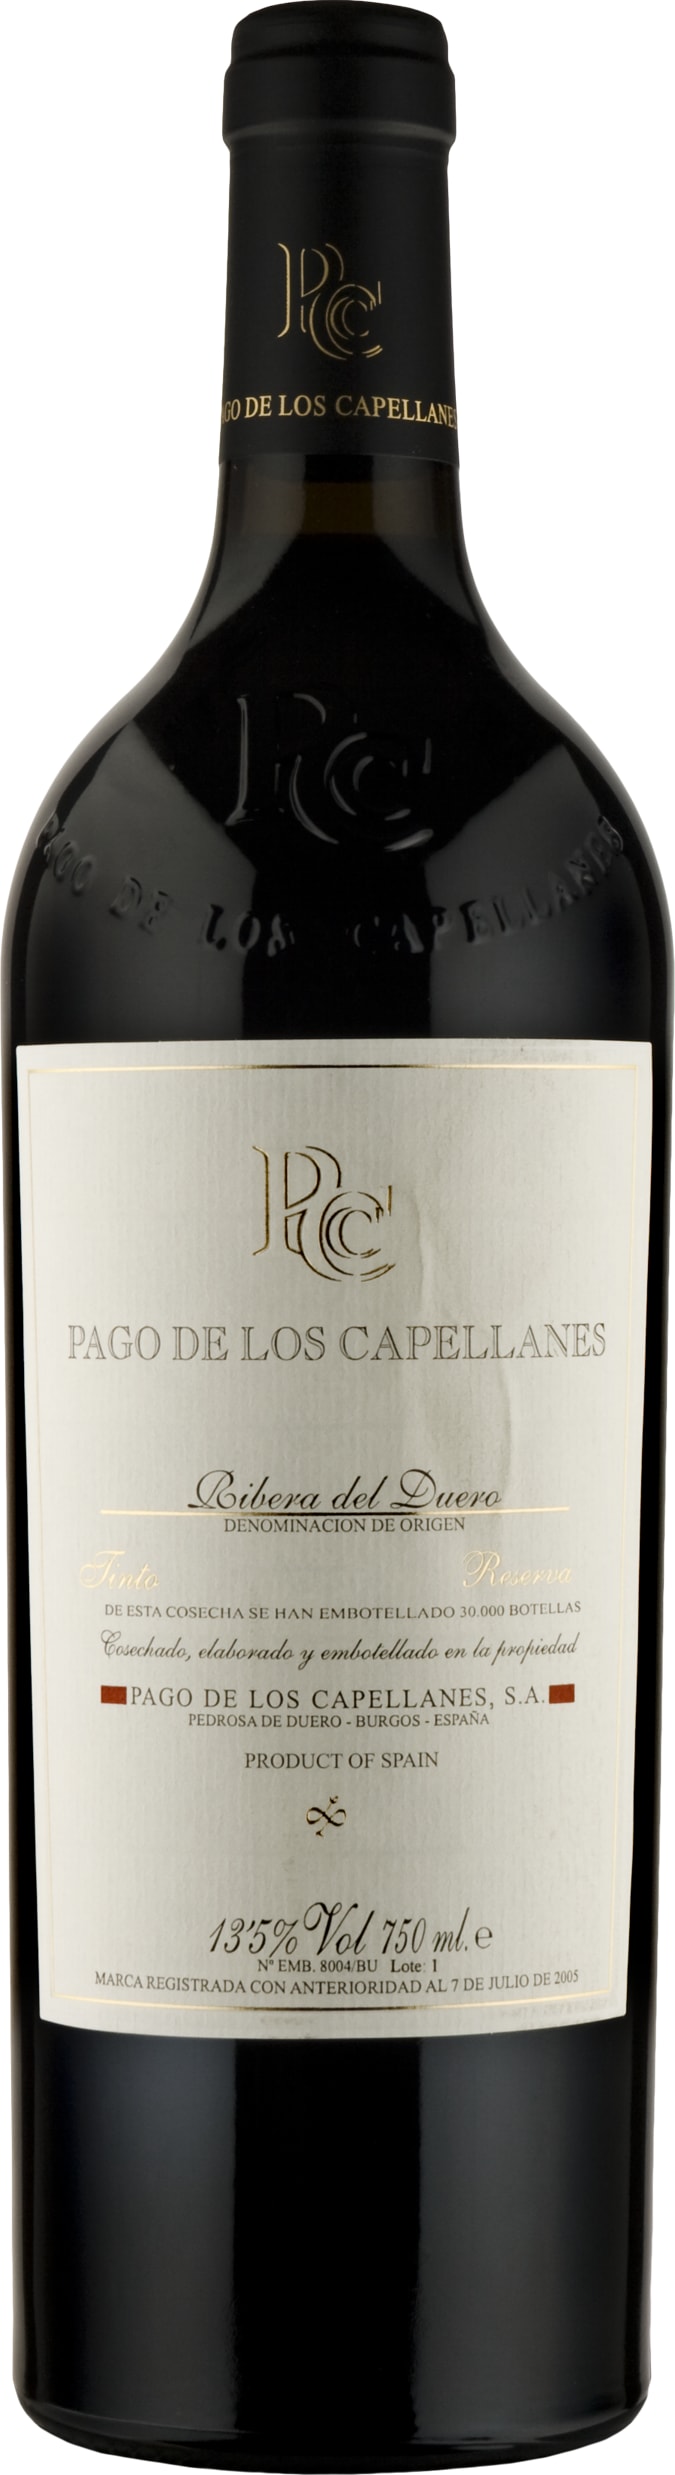 Pago de los Capellanes Reserva 2020 75cl - Buy Pago de los Capellanes Wines from GREAT WINES DIRECT wine shop